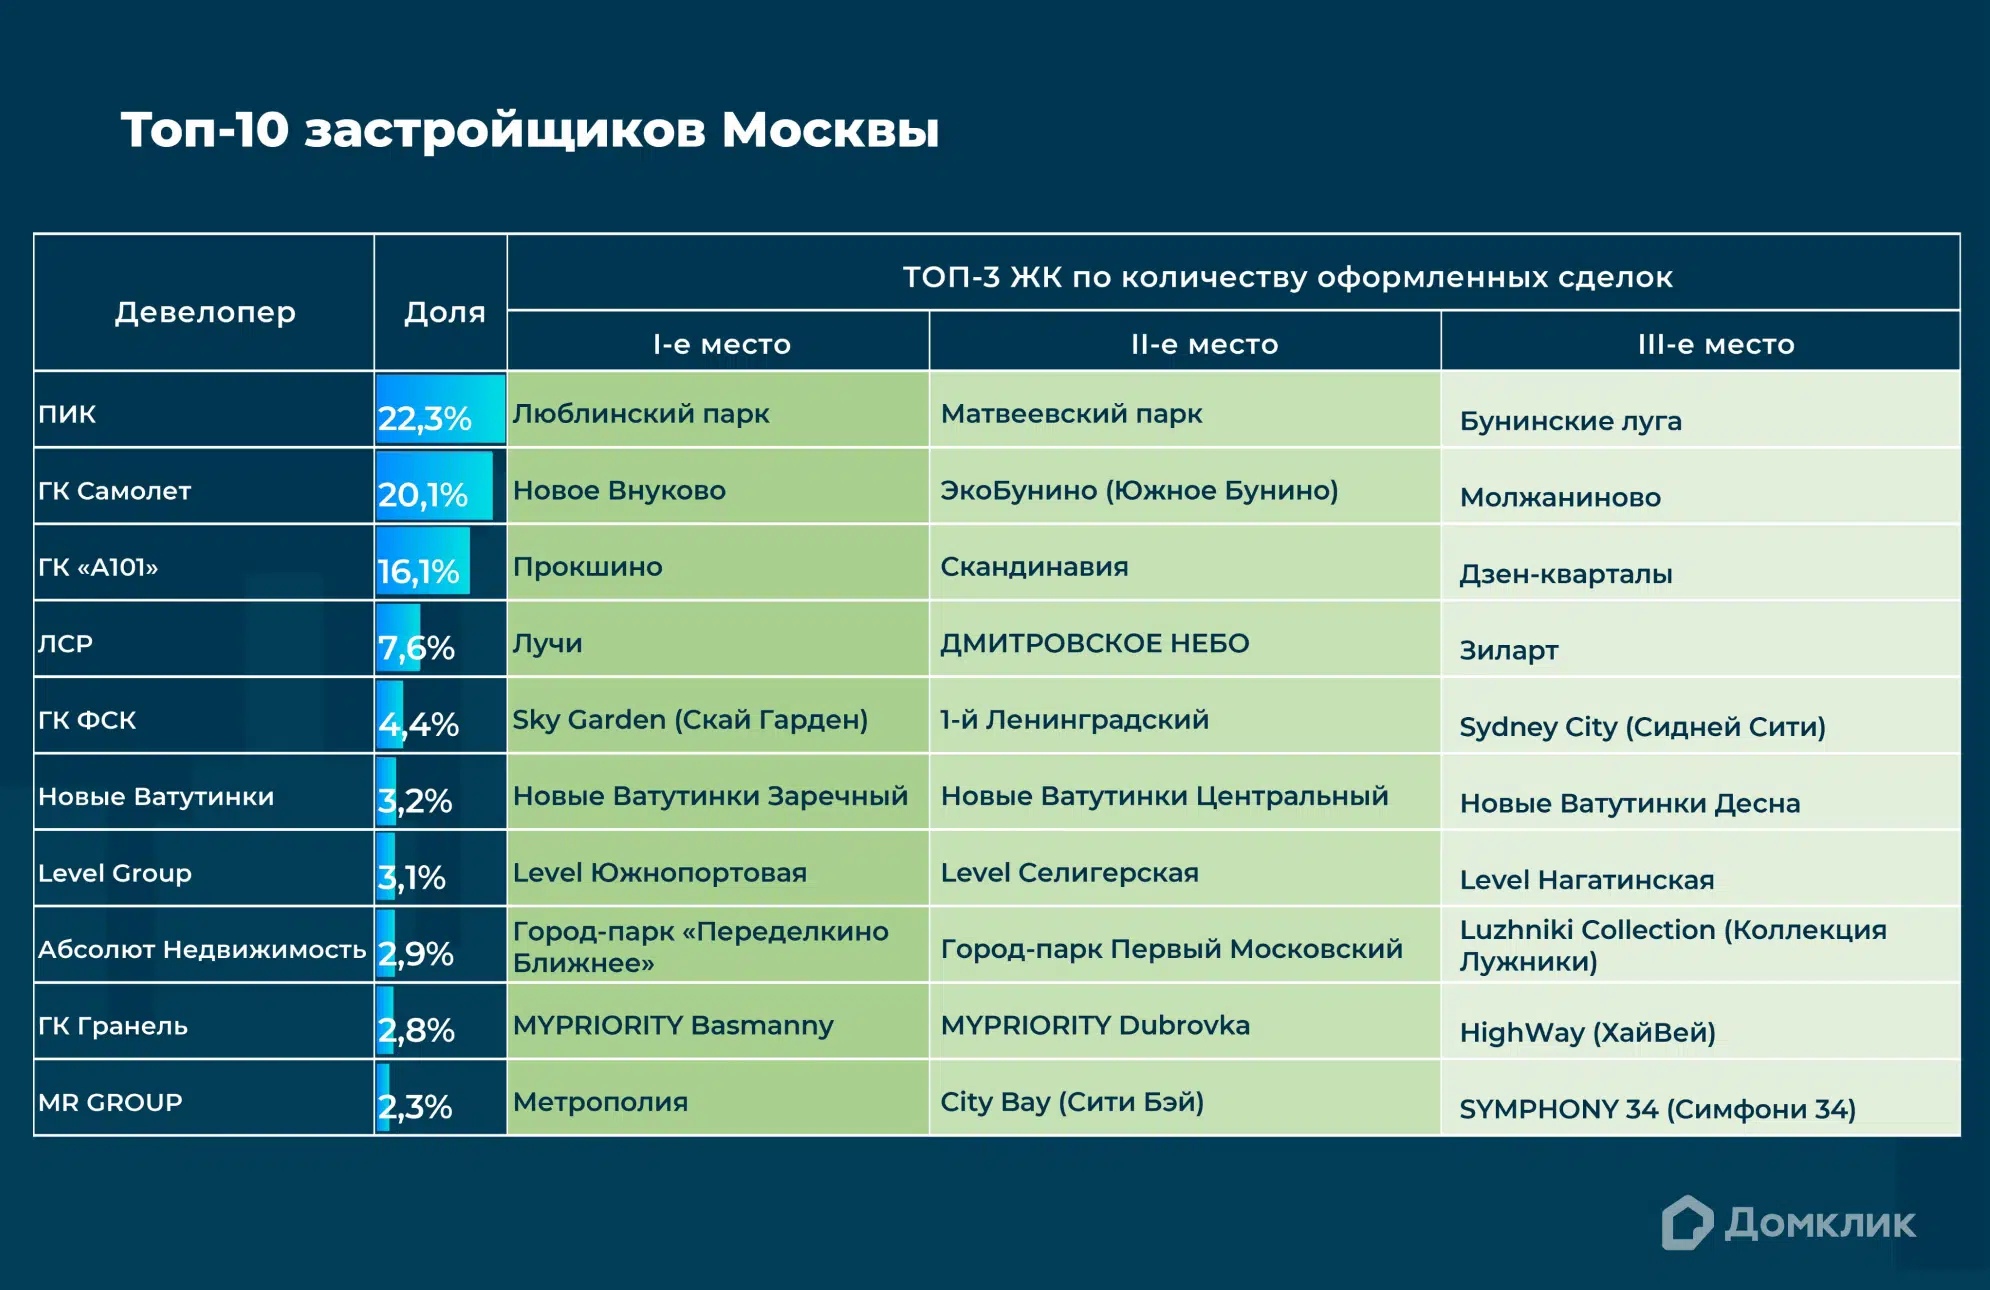 Топ-10 девелоперов Москвы по количеству сделок, проведенных с участием Сбербанка, включая сделки за свои средства.